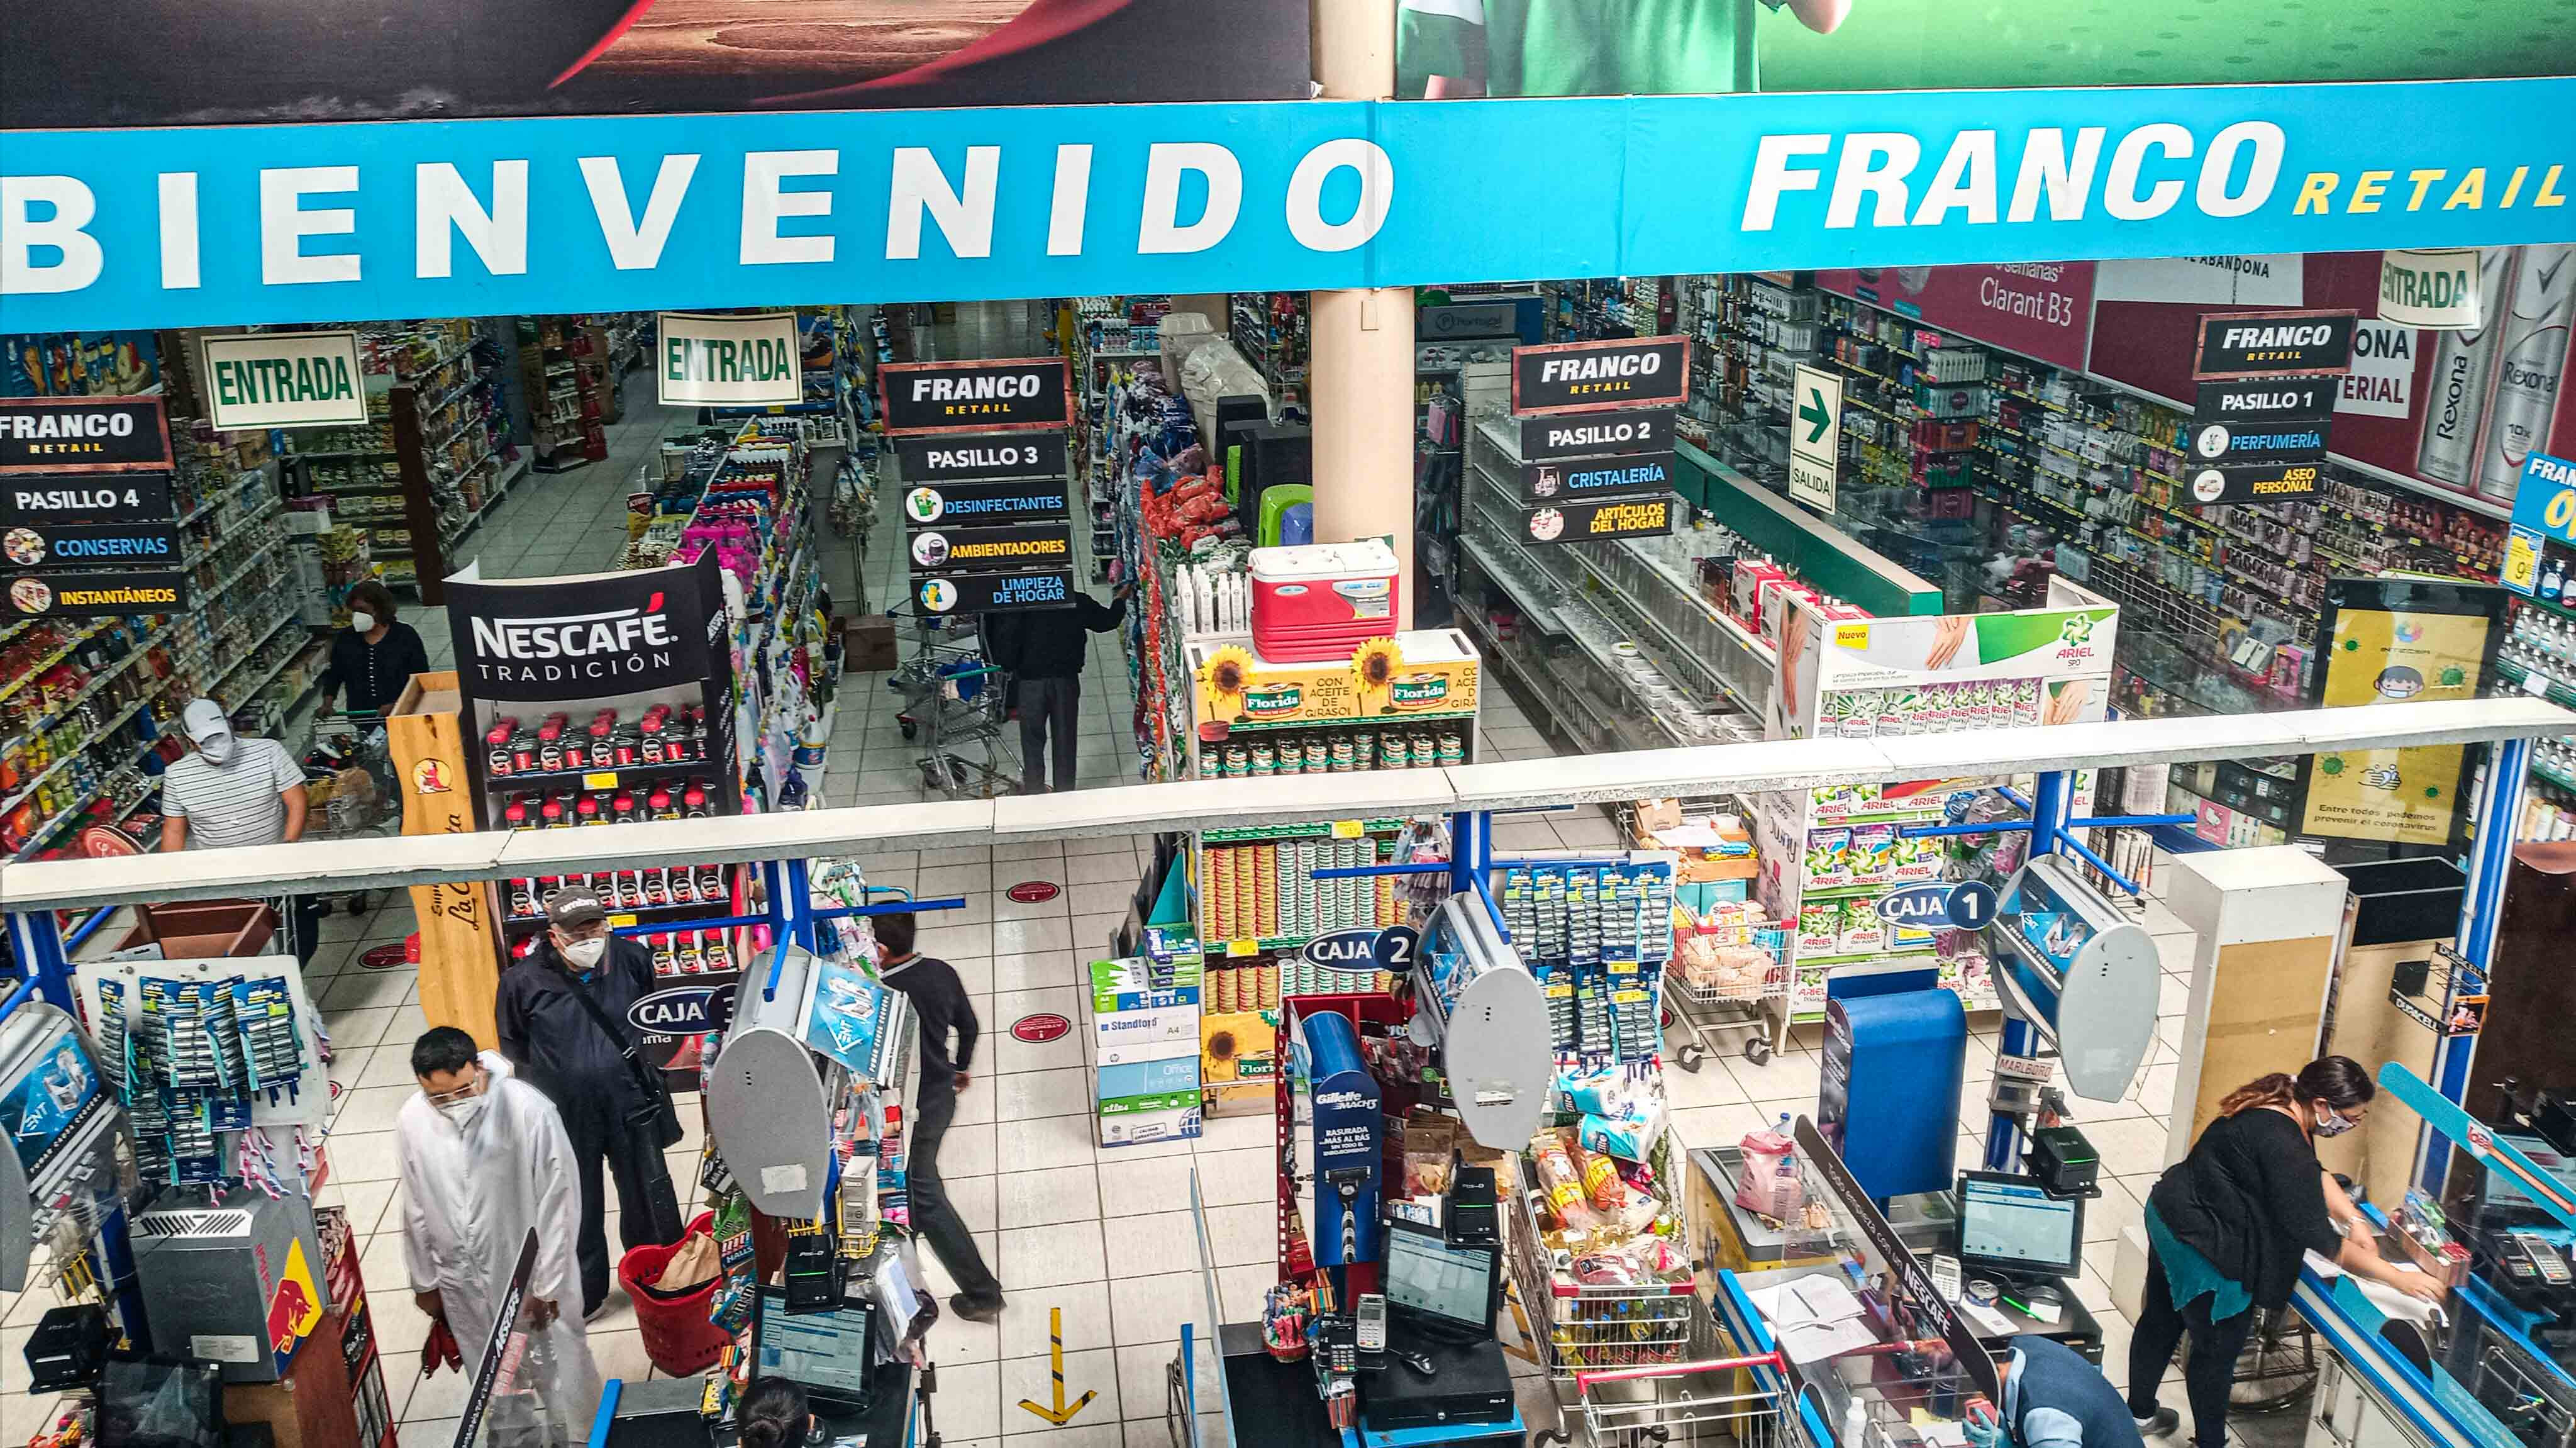 Franco Retail